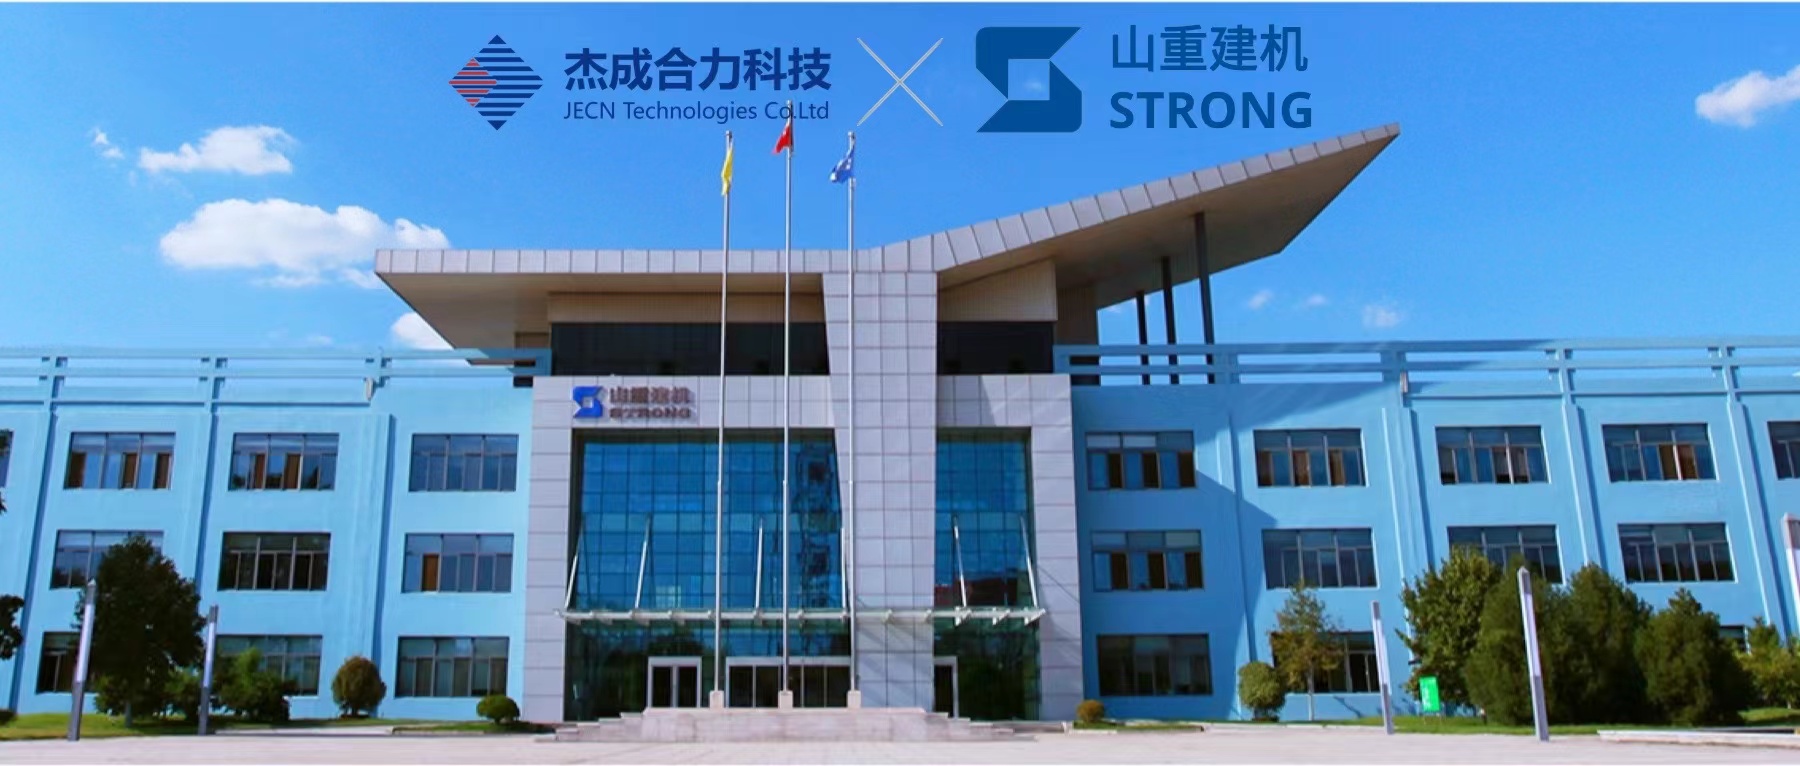 【杰成快讯】中国机械制造百强企业山重建机选择EPROS流程管理平台